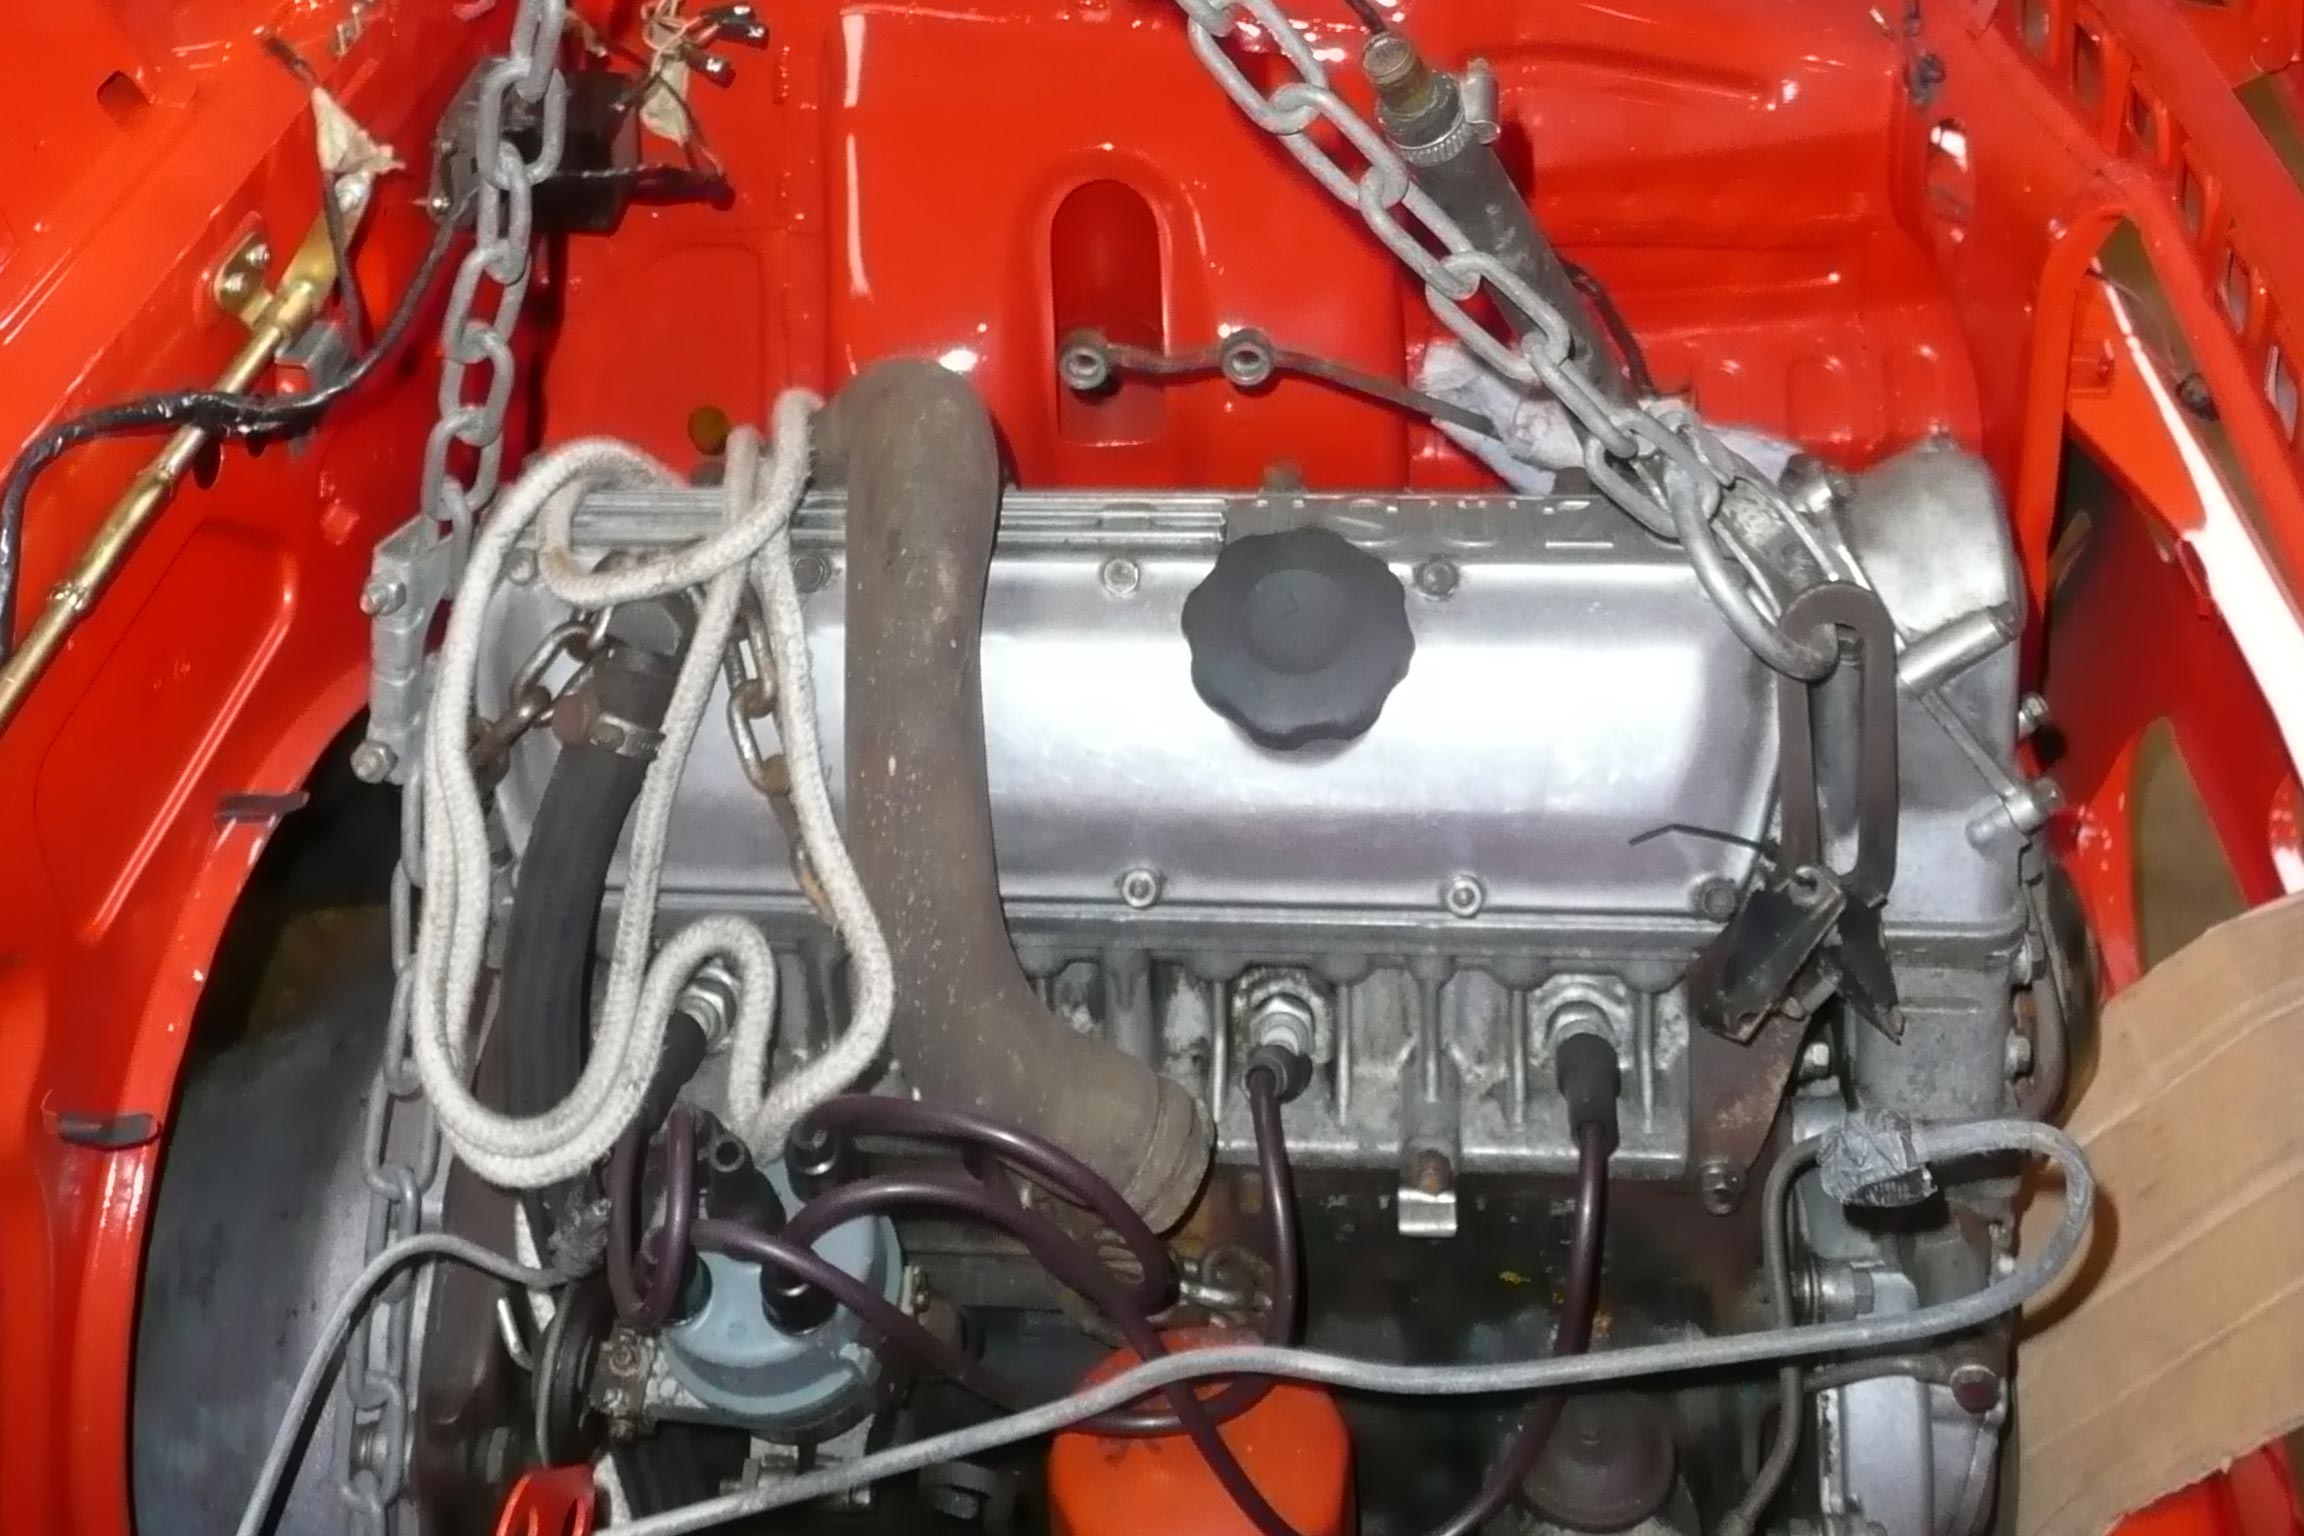 Rebuilt engine being fittd to a Isuzu Bellett